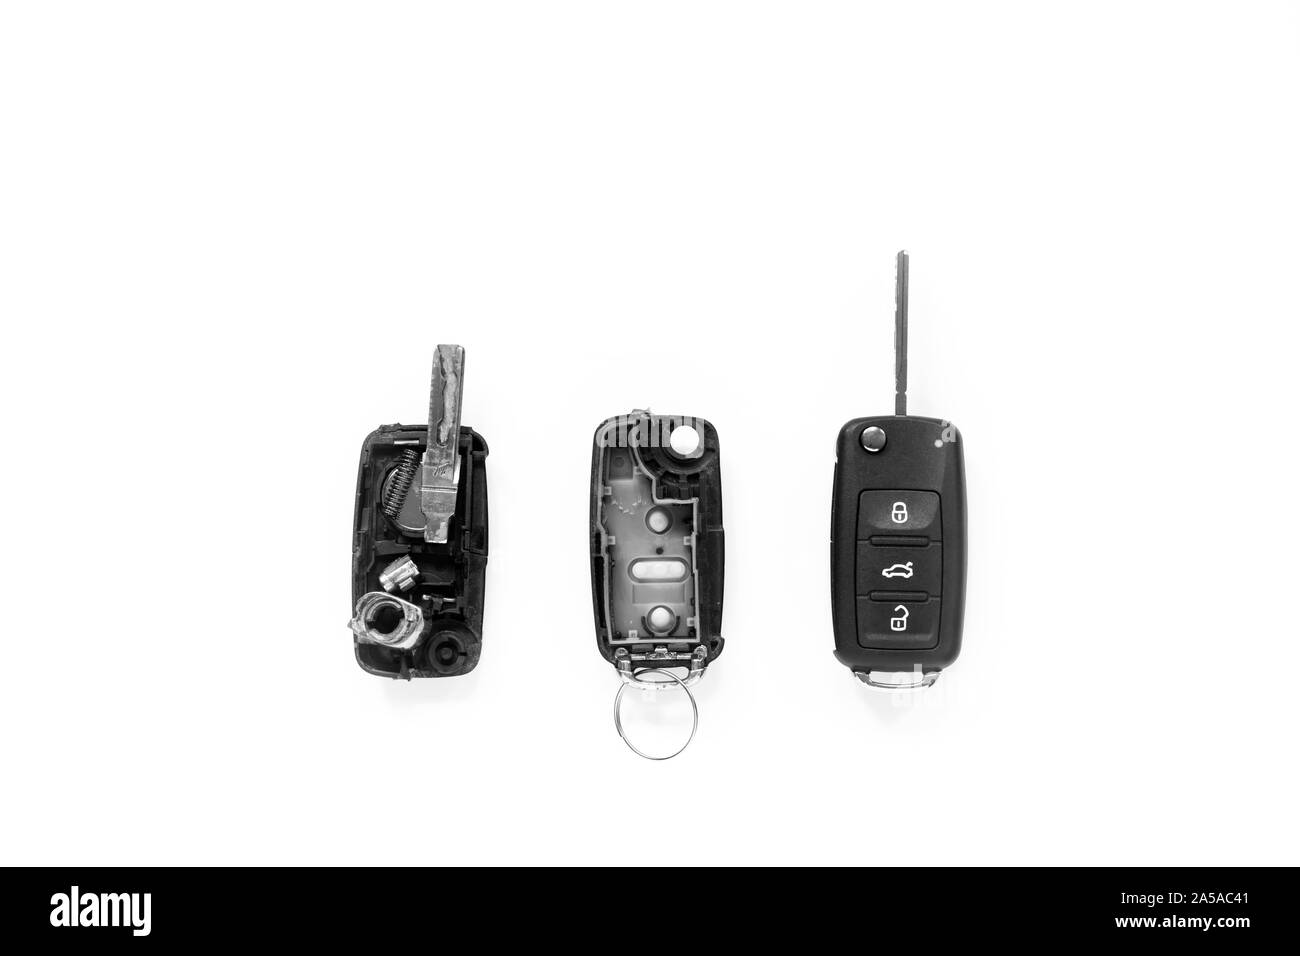 Rotto o danneggiato remote key fob di qualsiasi veicolo car service center.- Immagine Foto Stock